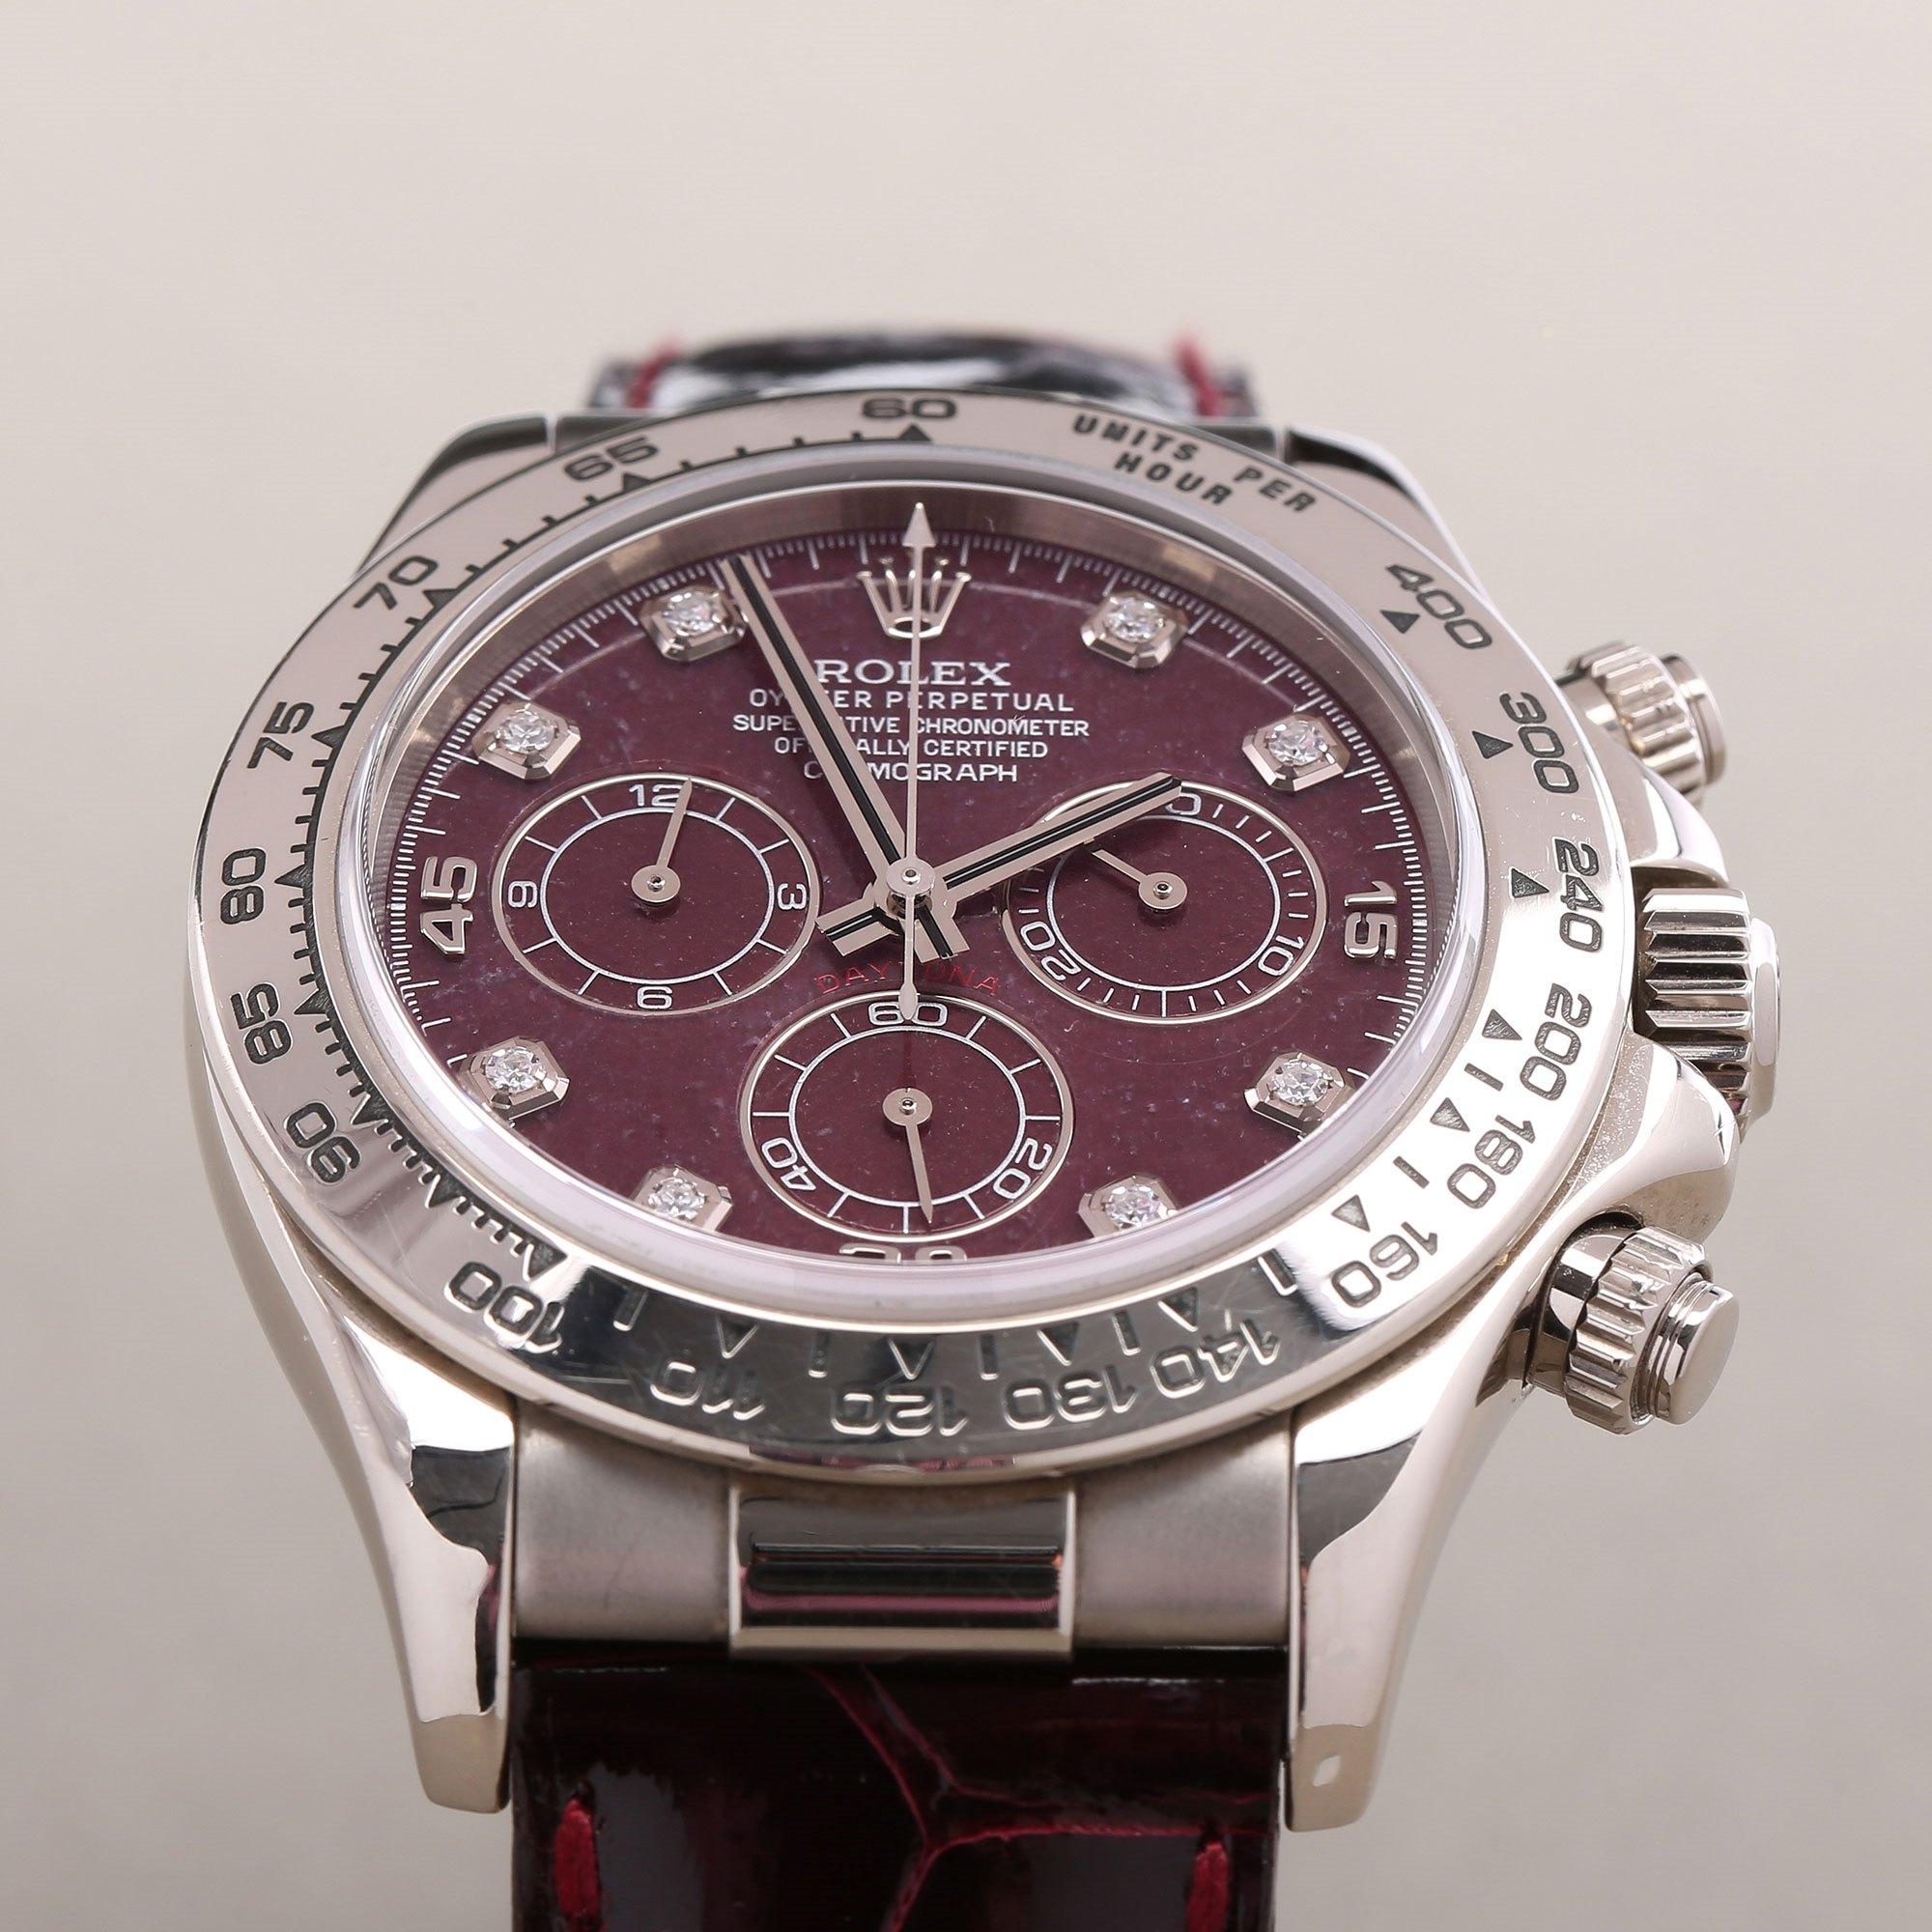 Rolex Daytona 116519 Men's White Gold Grossular Dial Watch 2